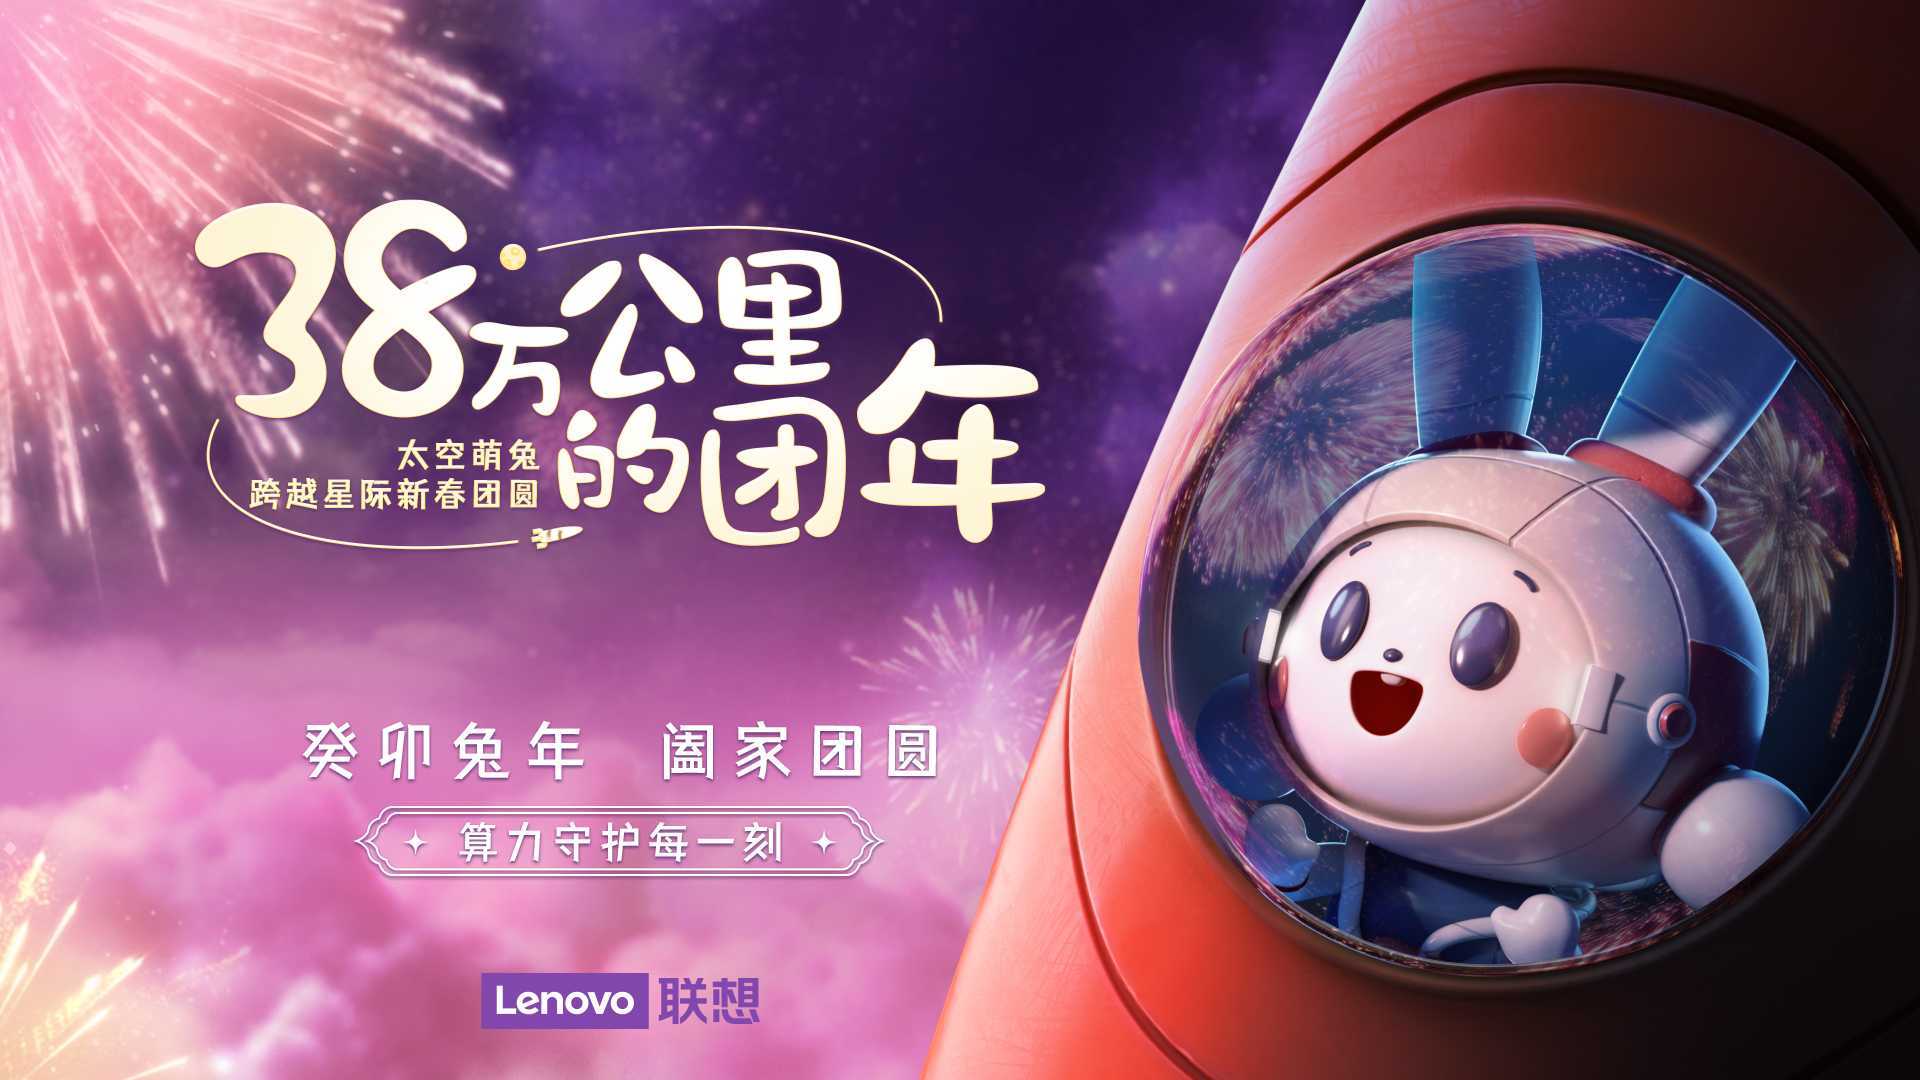 38万公里的团年——联想携手“中国探月太空萌兔”一起回家